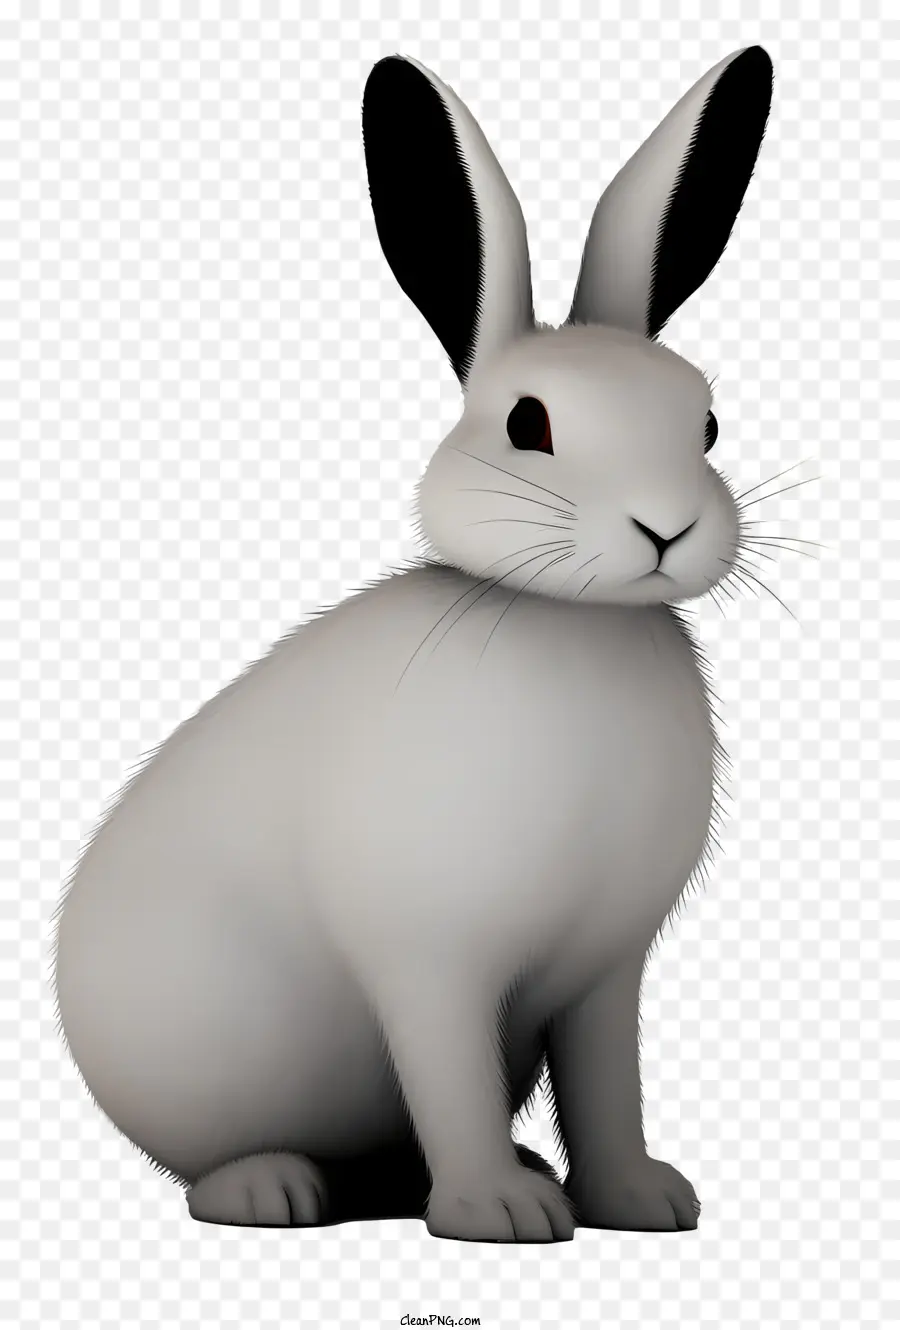 coniglio coniglietto curioso coniglio curioso di coniglio bianco coniglio - Coniglio bianco con naso nero e occhi castani